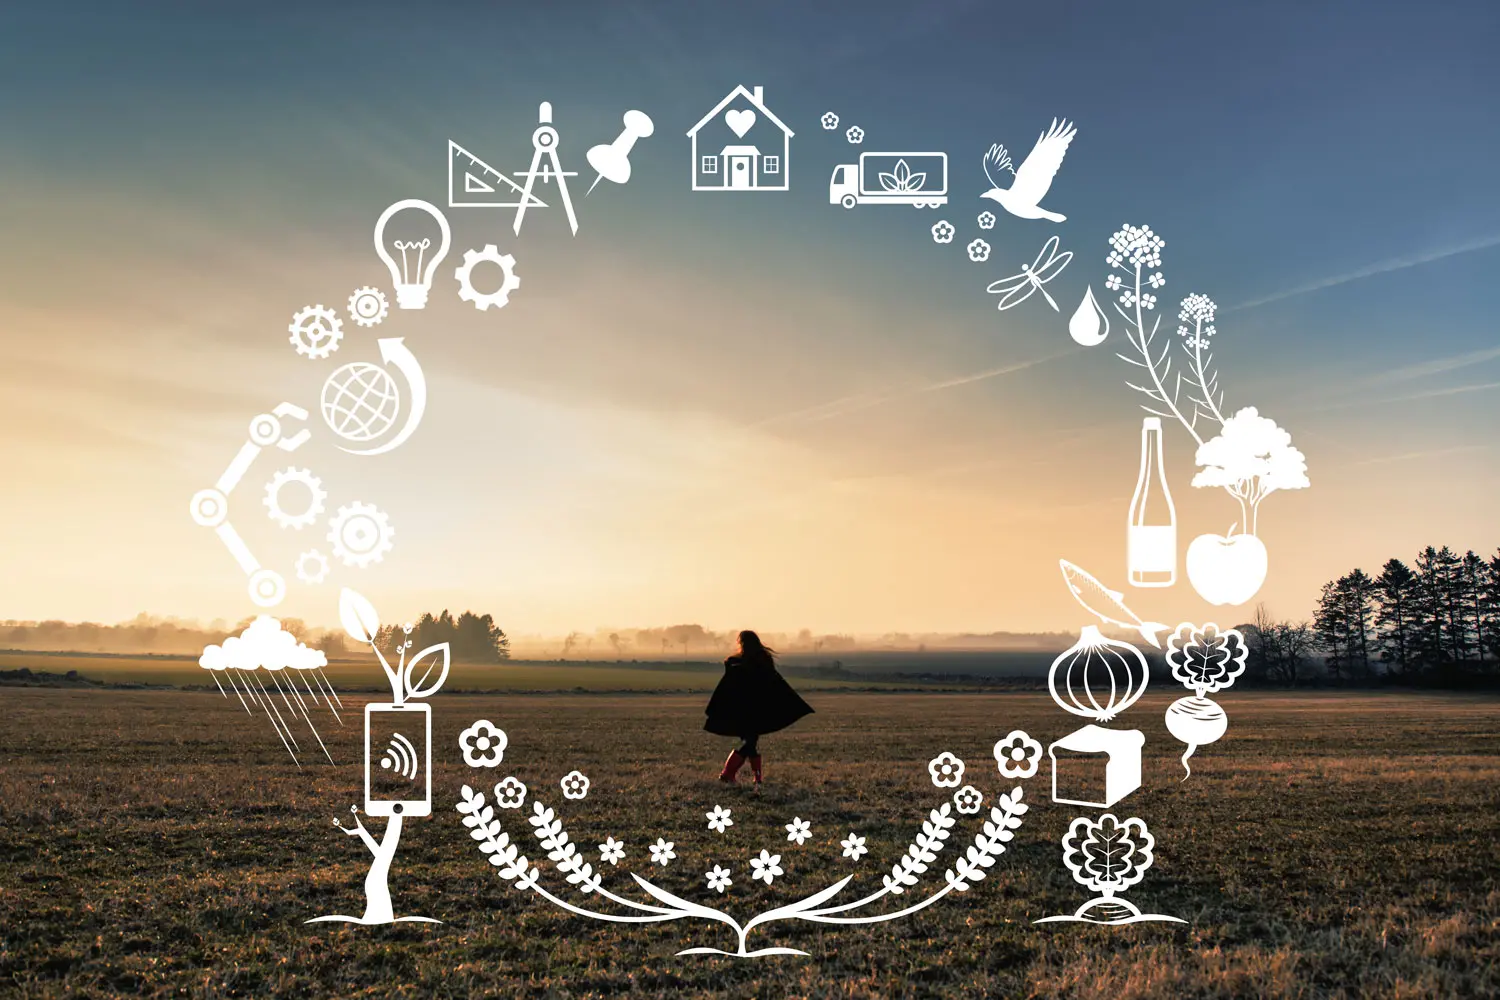 Kvinna med svart kappa på en åker, omgiven av grafik i en krans med olika saker som symboliserar visionen: teknik, innovation, natur och grödor